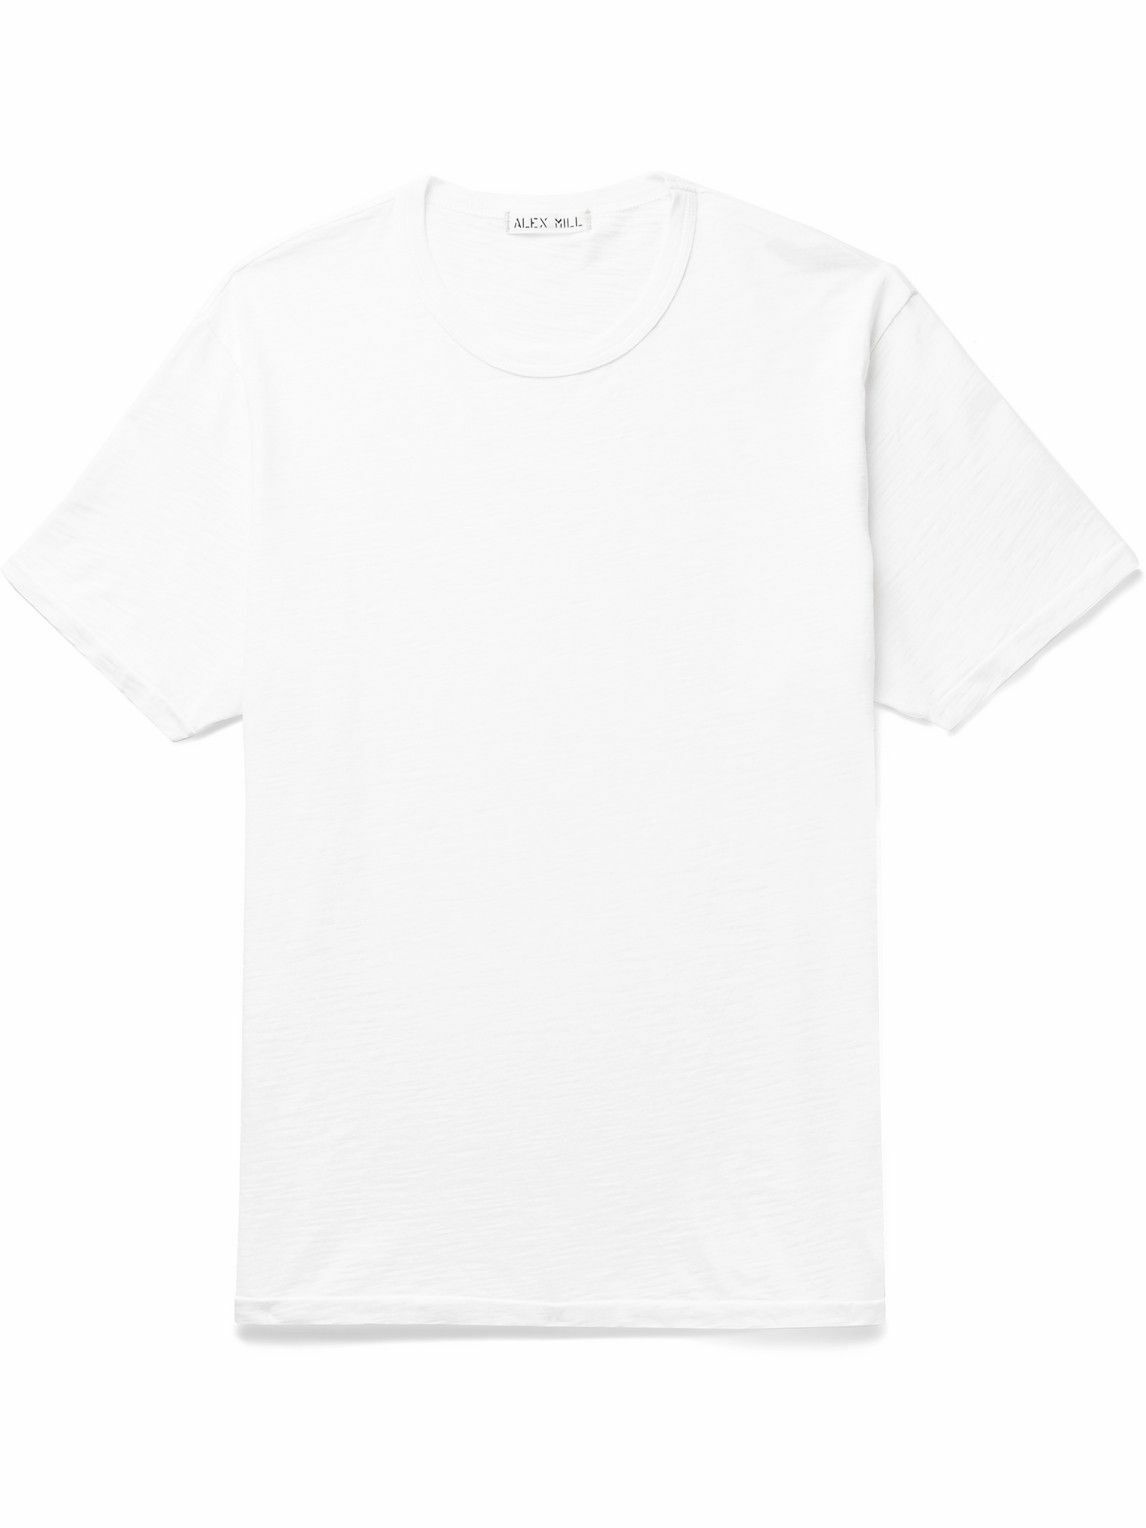 Alex Mill - Standard Slim-Fit Slub Cotton-Jersey T-Shirt - White Alex Mill